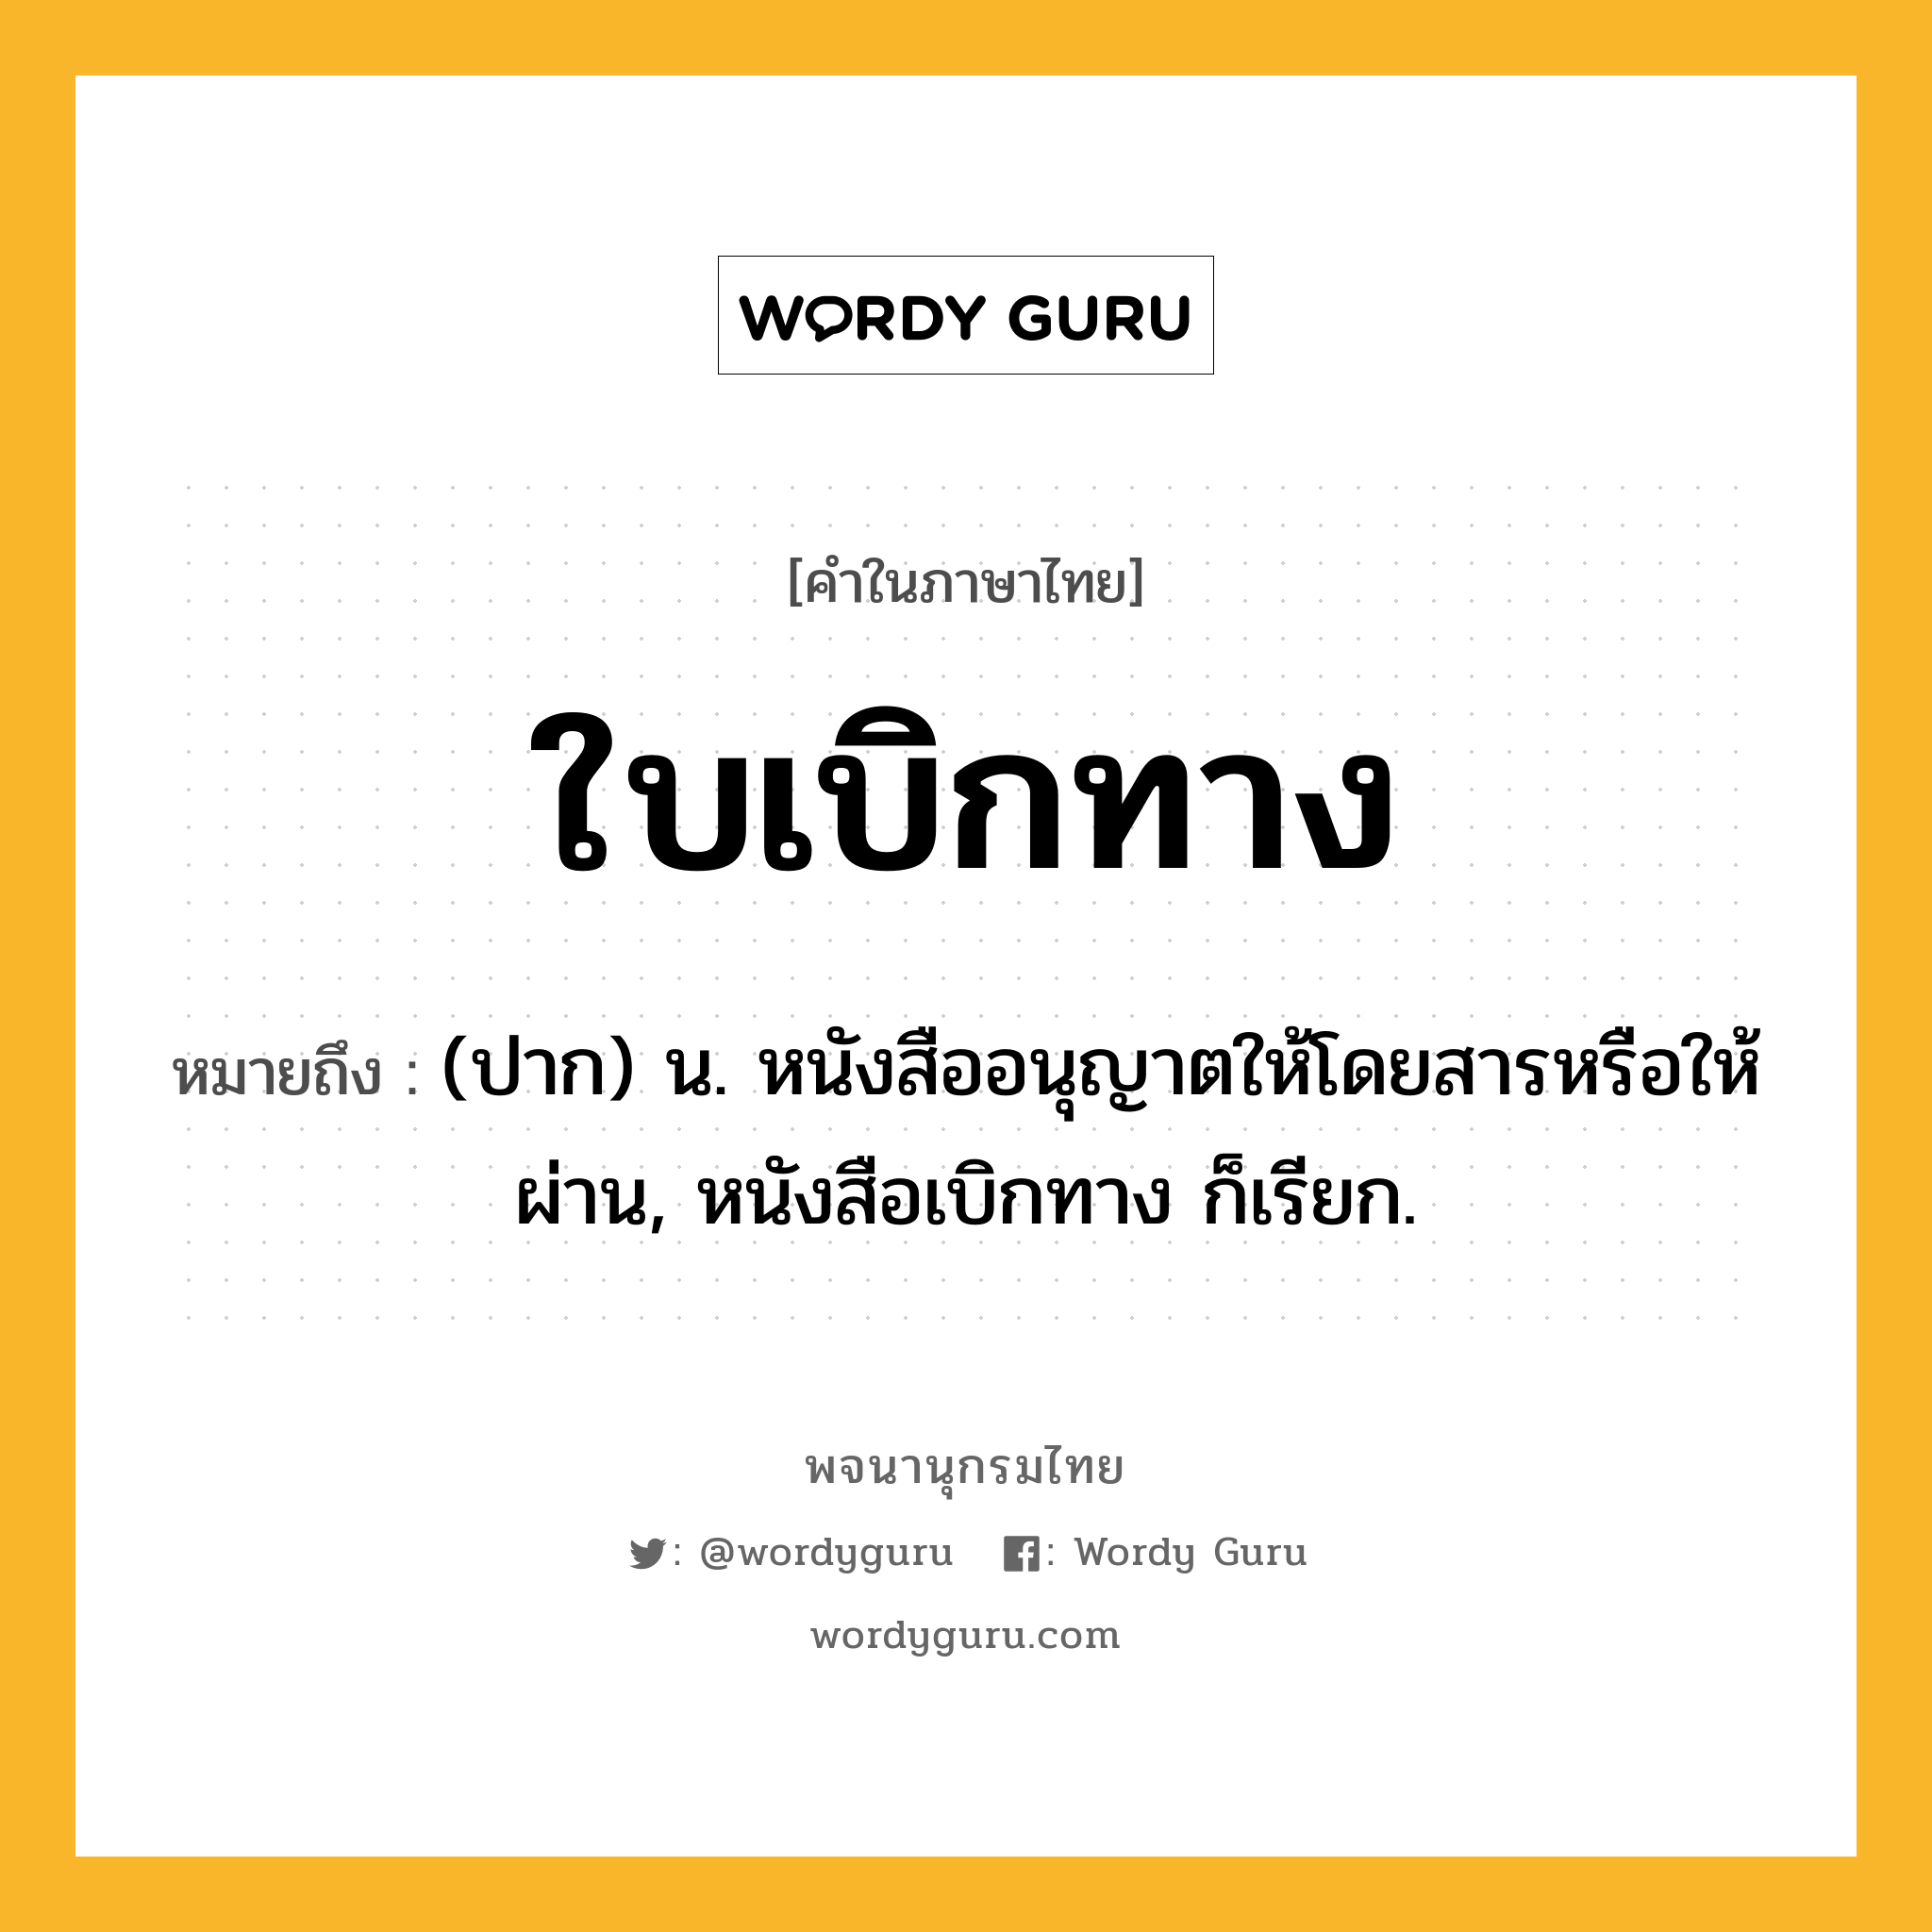 ใบเบิกทาง ความหมาย หมายถึงอะไร?, คำในภาษาไทย ใบเบิกทาง หมายถึง (ปาก) น. หนังสืออนุญาตให้โดยสารหรือให้ผ่าน, หนังสือเบิกทาง ก็เรียก.